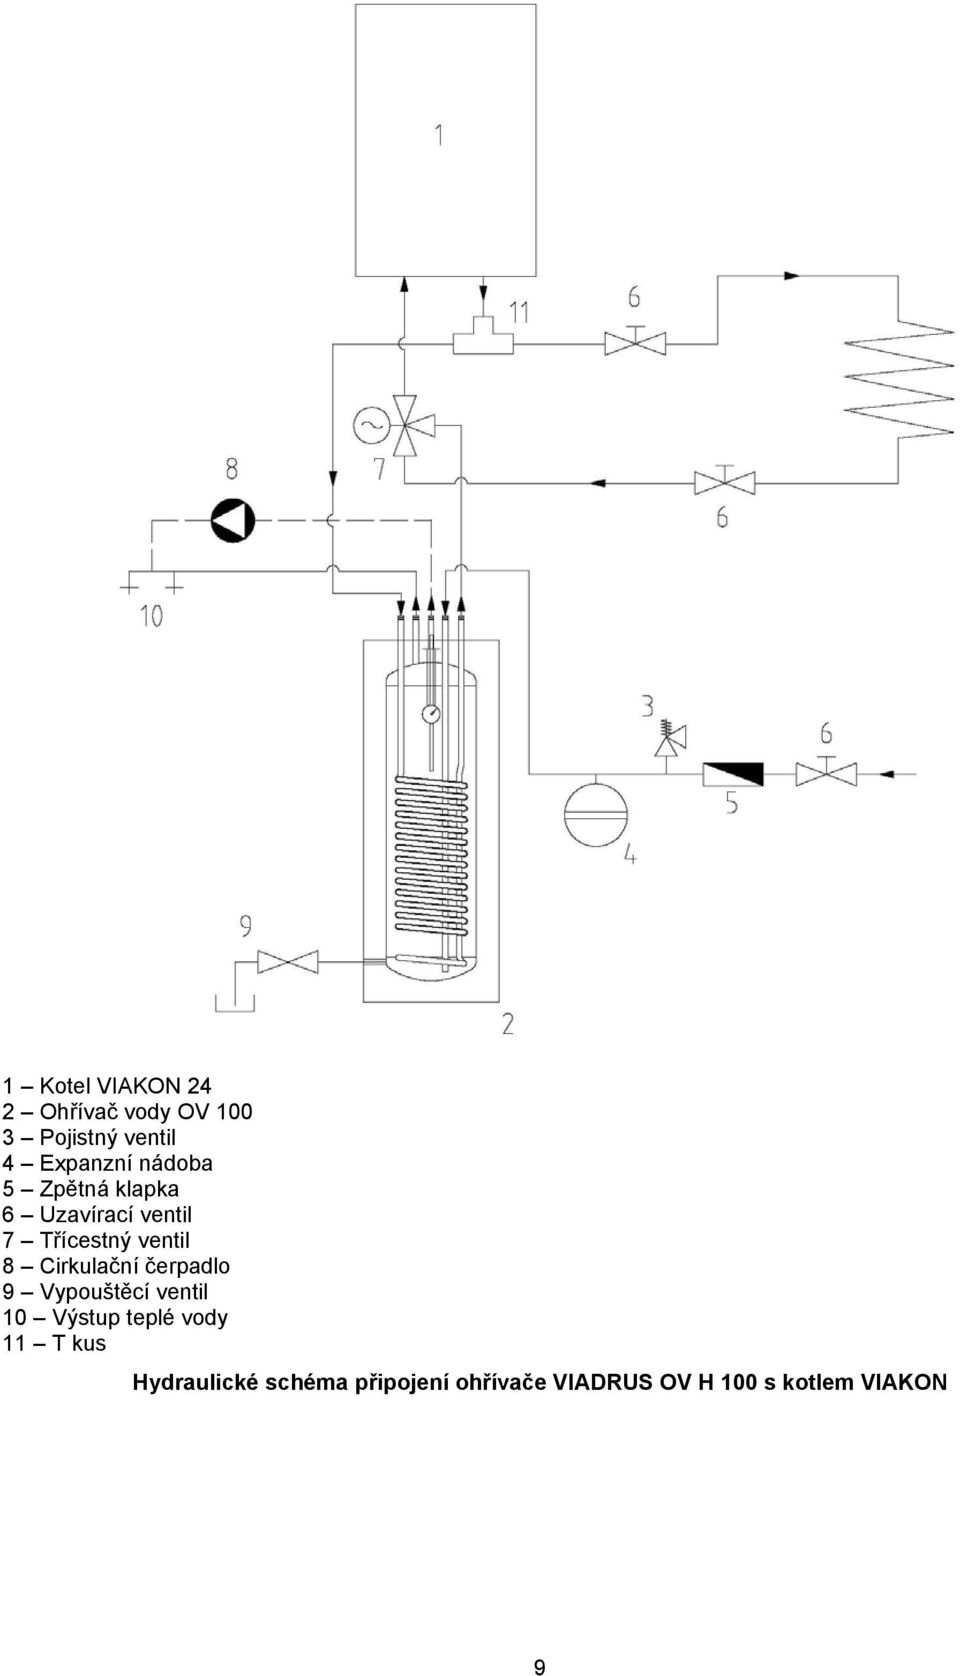 Cirkulační čerpadlo 9 Vypouštěcí ventil 10 Výstup teplé vody 11 T